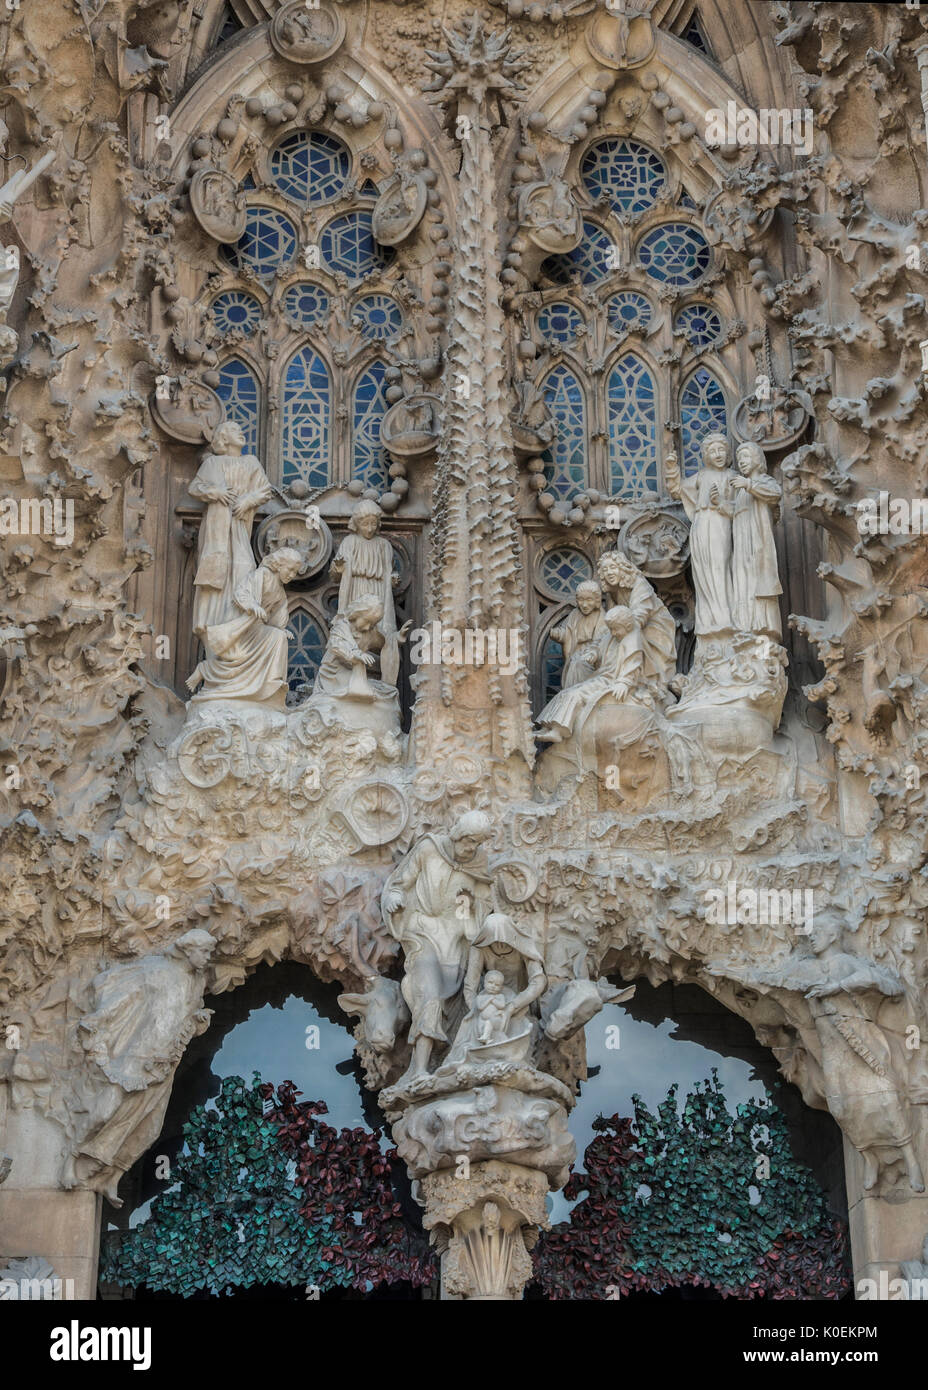 Sculpture de l'Adoration de la nativité de Jésus sur l'extérieur de la Basilique de la Sagrada Familia à Barcelone, Espagne Banque D'Images